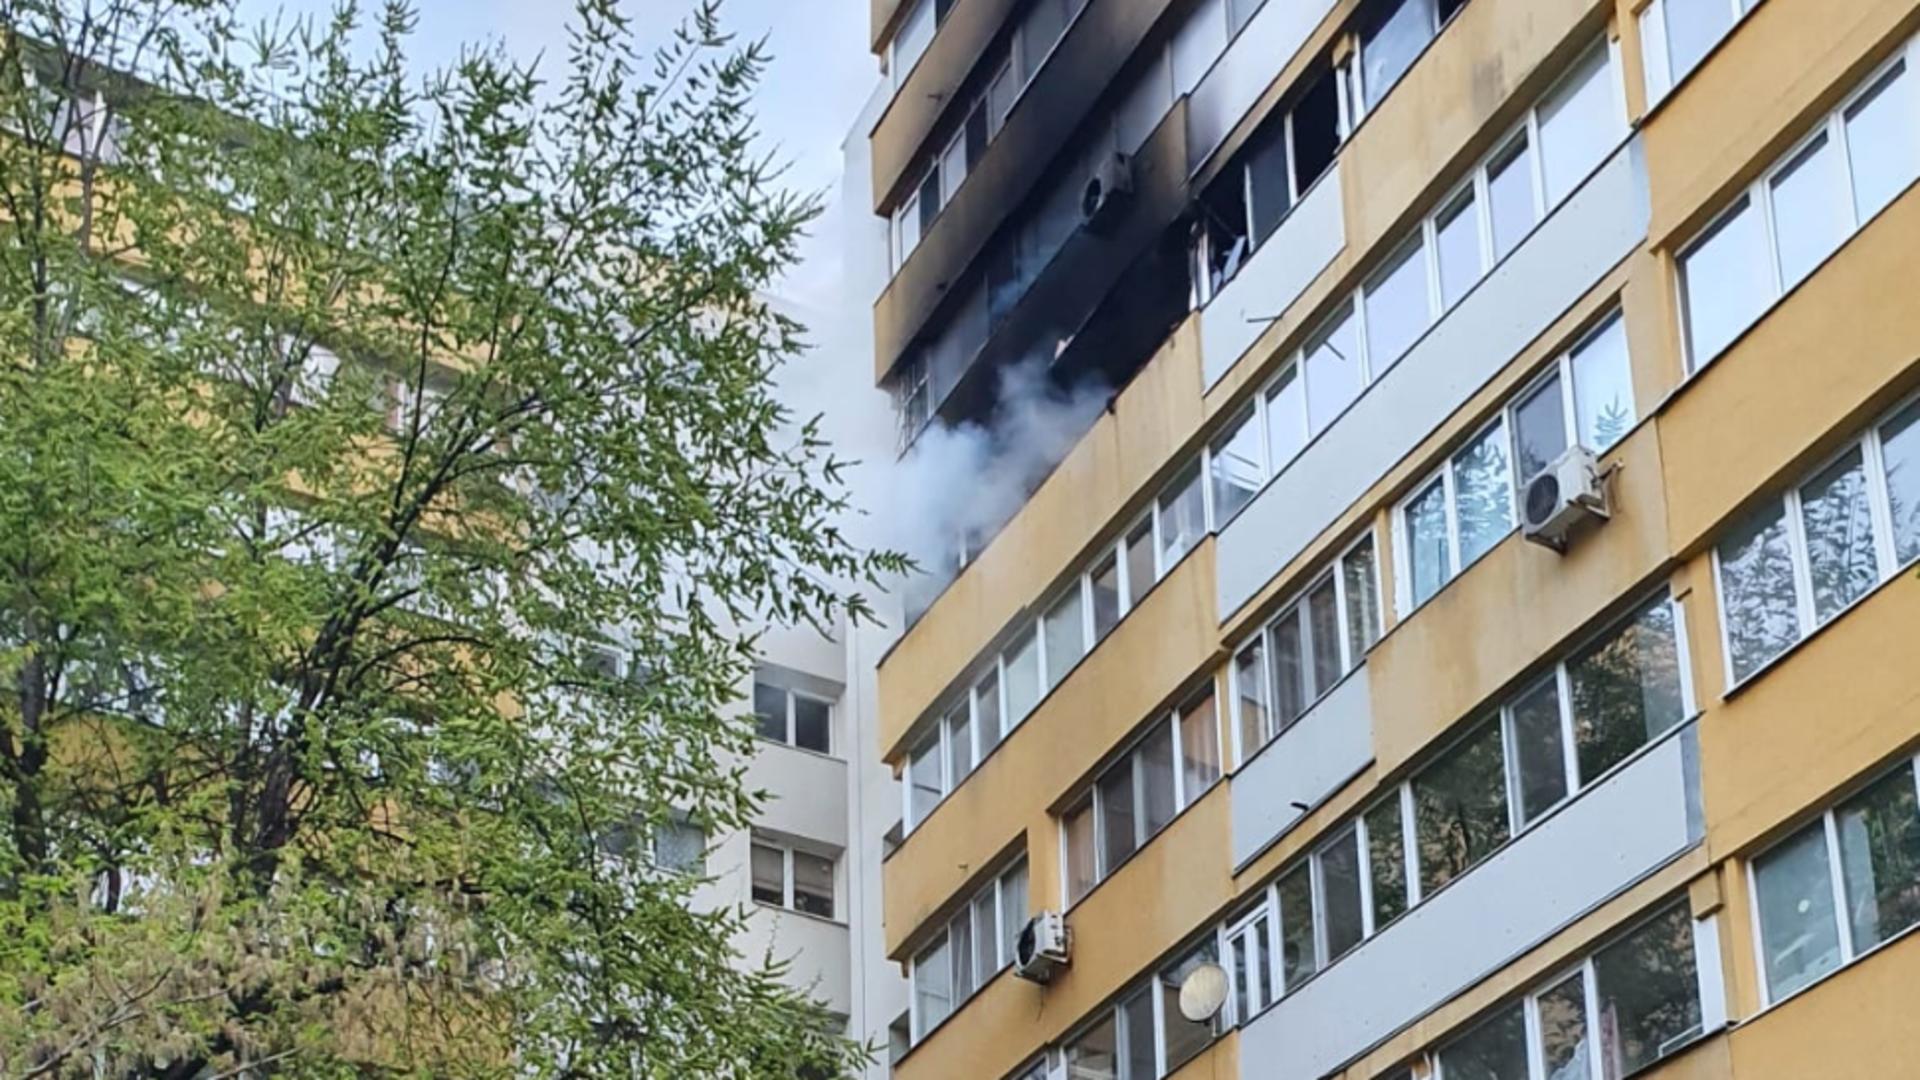 Incendiu violent, în Capitală, într-un apartament din zona Doamna Ghica